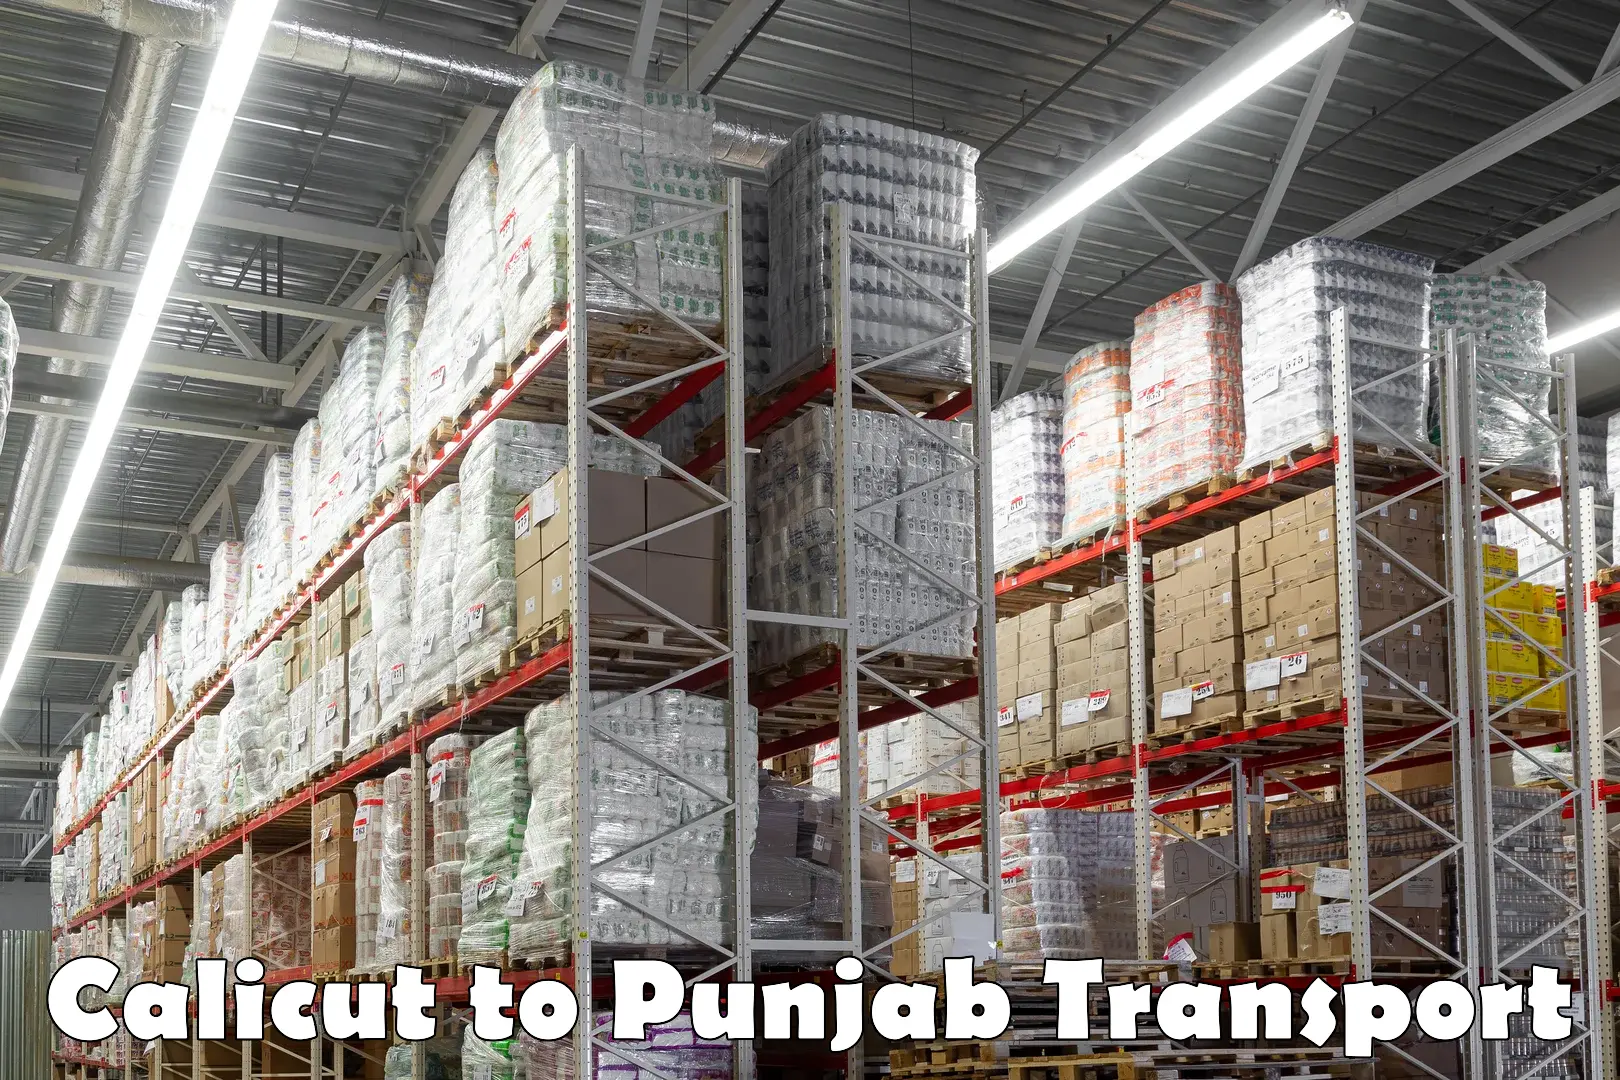 Transport in sharing Calicut to Punjab